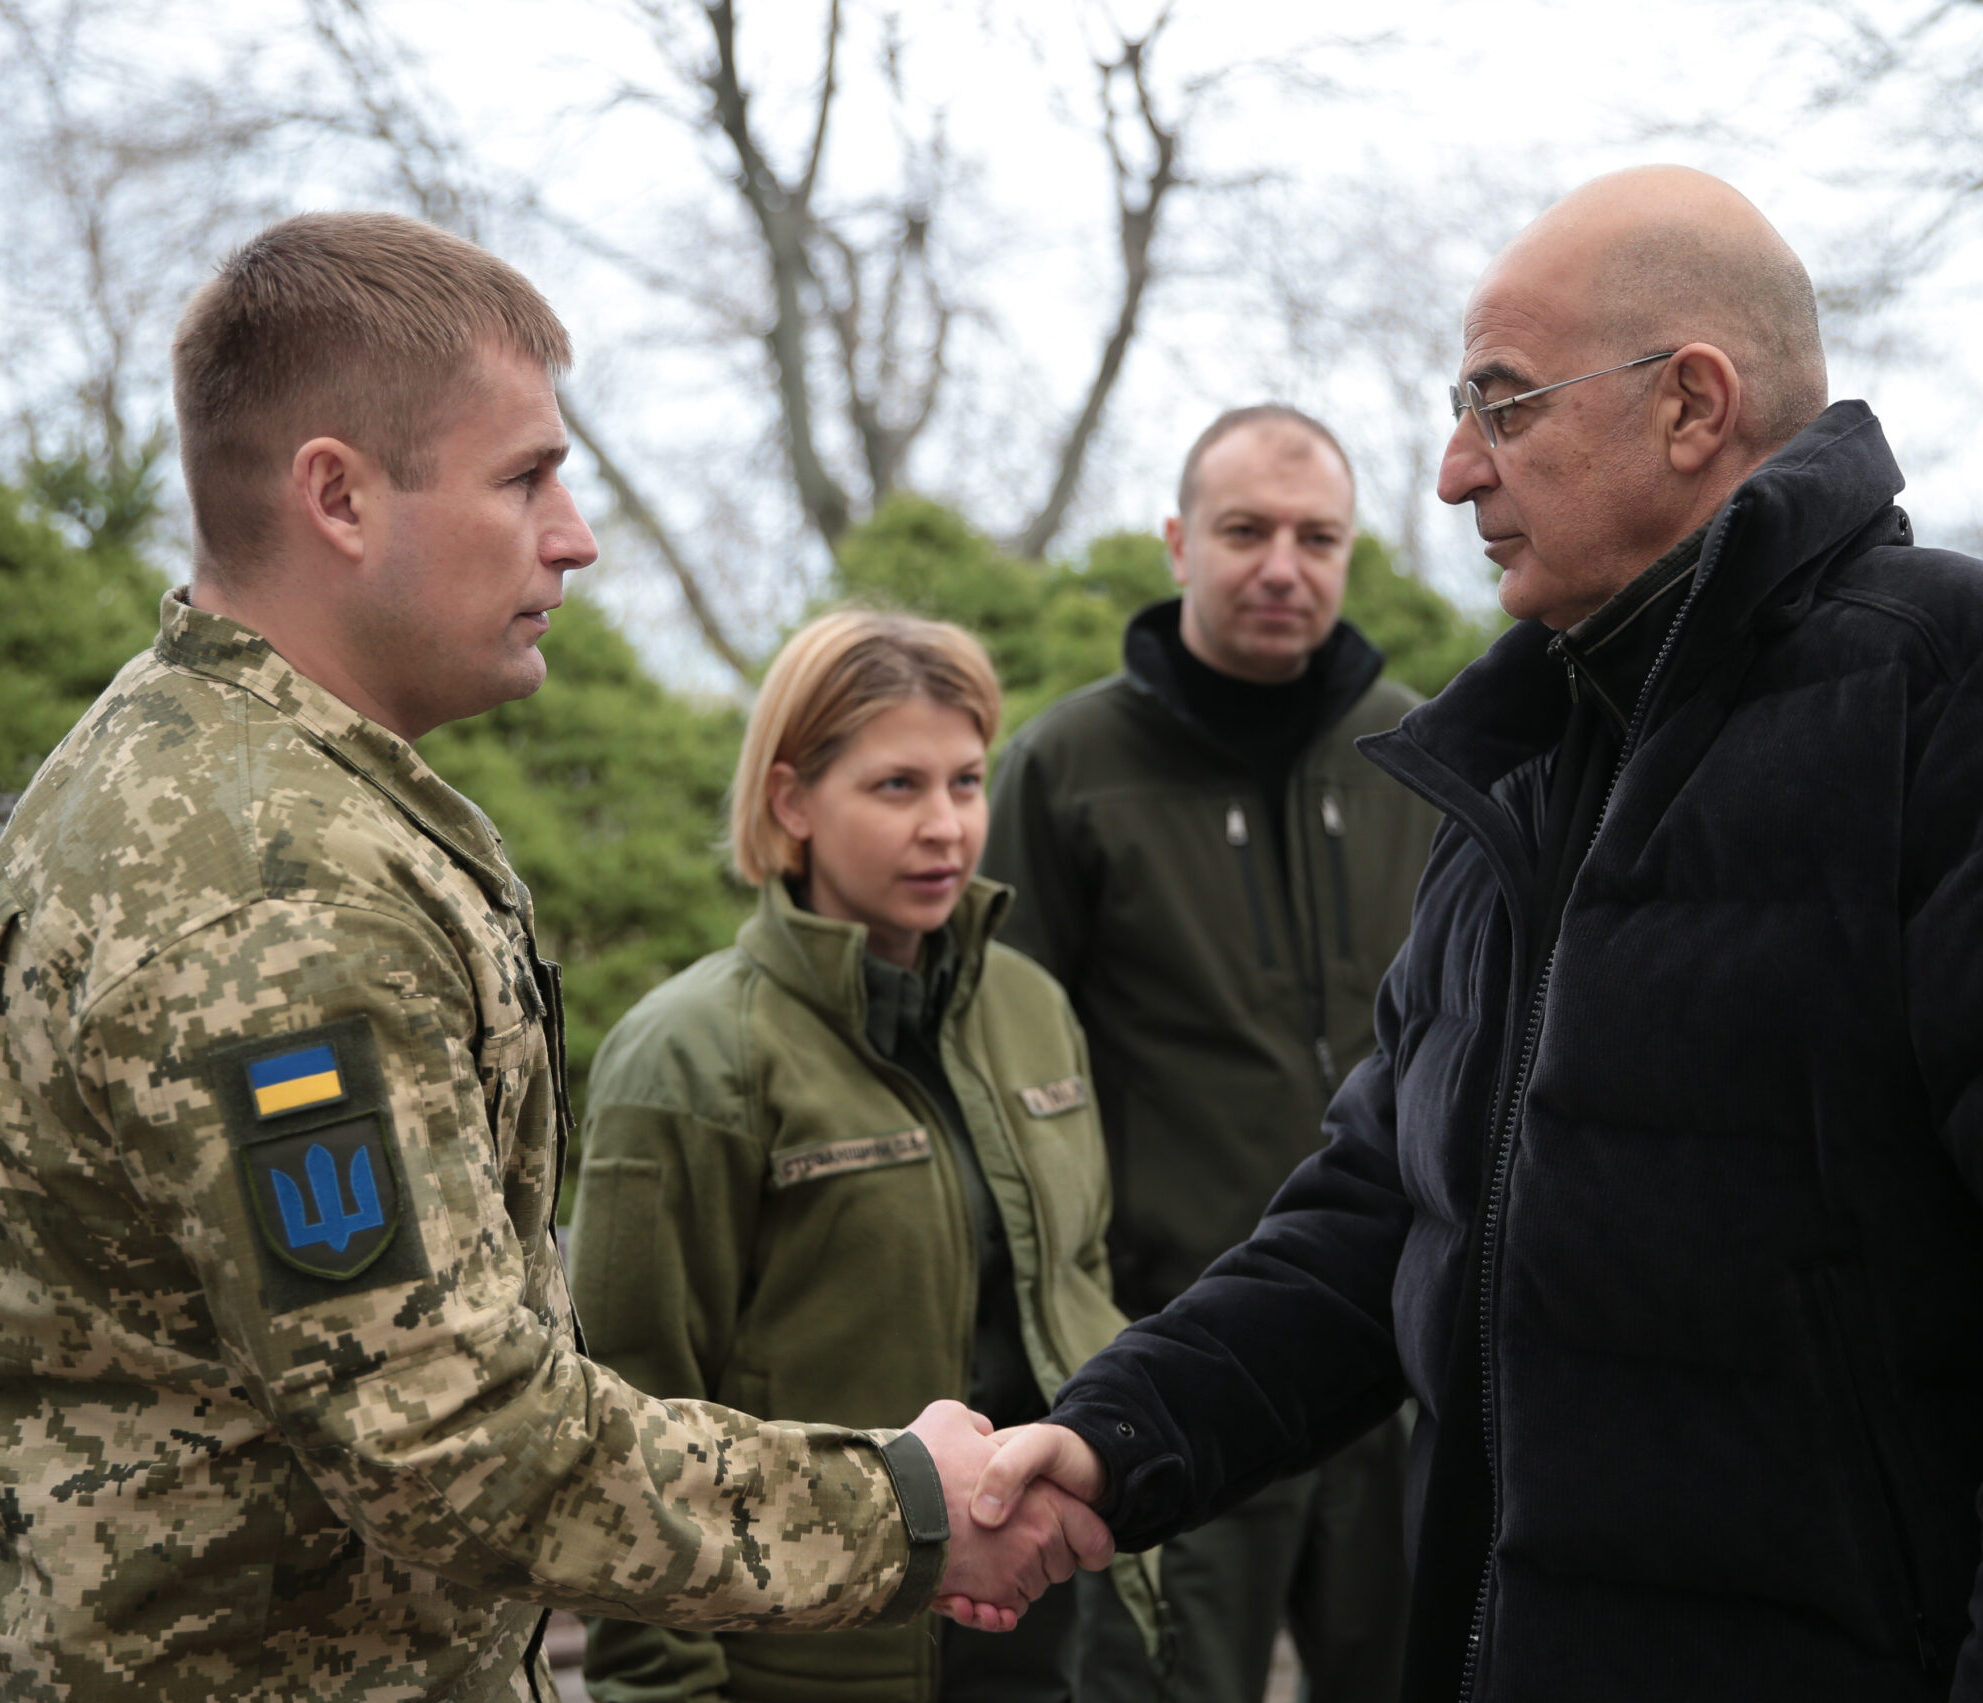 Ο υπουργός Εξωτερικών Νίκος Δένδιας συναντάται με την αναπληρωτή πρωθυπουργό Olha Stefanishyna αρμόδια για την Ευρωπαϊκή και Ευρω-Ατλαντική Ενσωμάτωση της Ουκρανίας και τον Συνταγματάρχη Μάρτσενκο επικεφαλής της περιφερειακής στρατιωτικής διοίκησης Οδησσού, την Κυριακή 3 Απριλίου 2022. ΑΠΕ-ΜΠΕ / ΑΠΕ-ΜΠΕ / ΓΙΩΡΓΟΣ ΒΙΤΣΑΡΑΣ